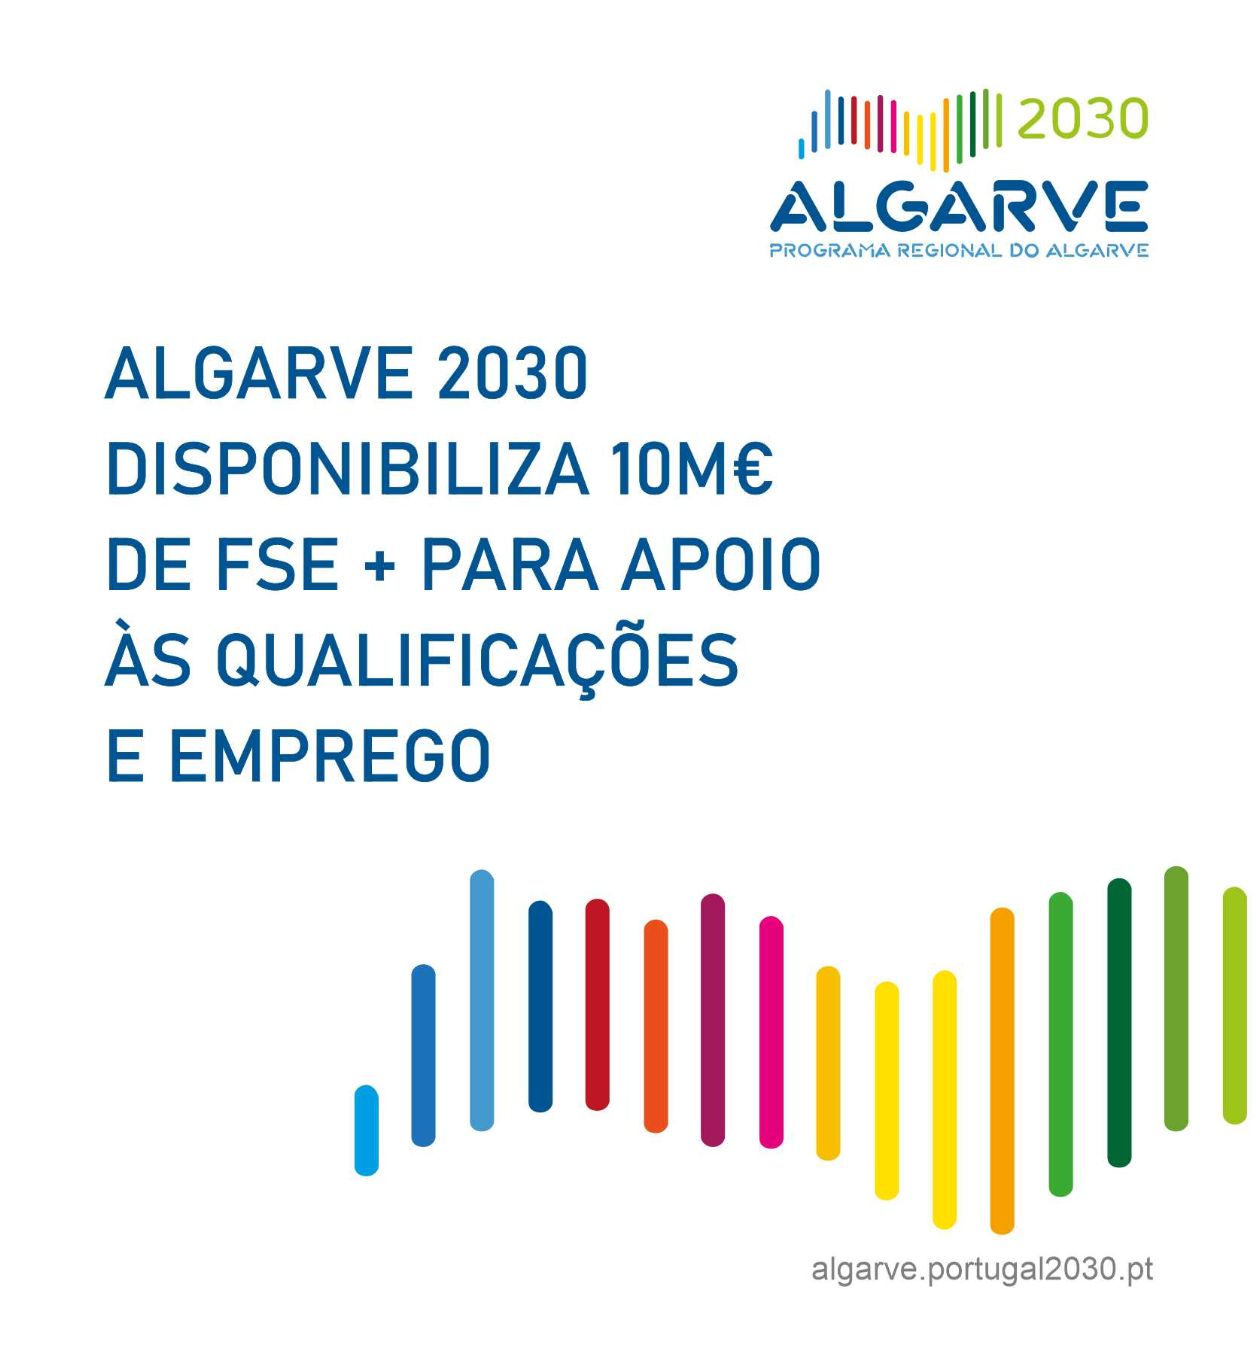 ALGARVE 2030 disponibiliza 10m€ de FSE+ para apoio às qualificações e emprego